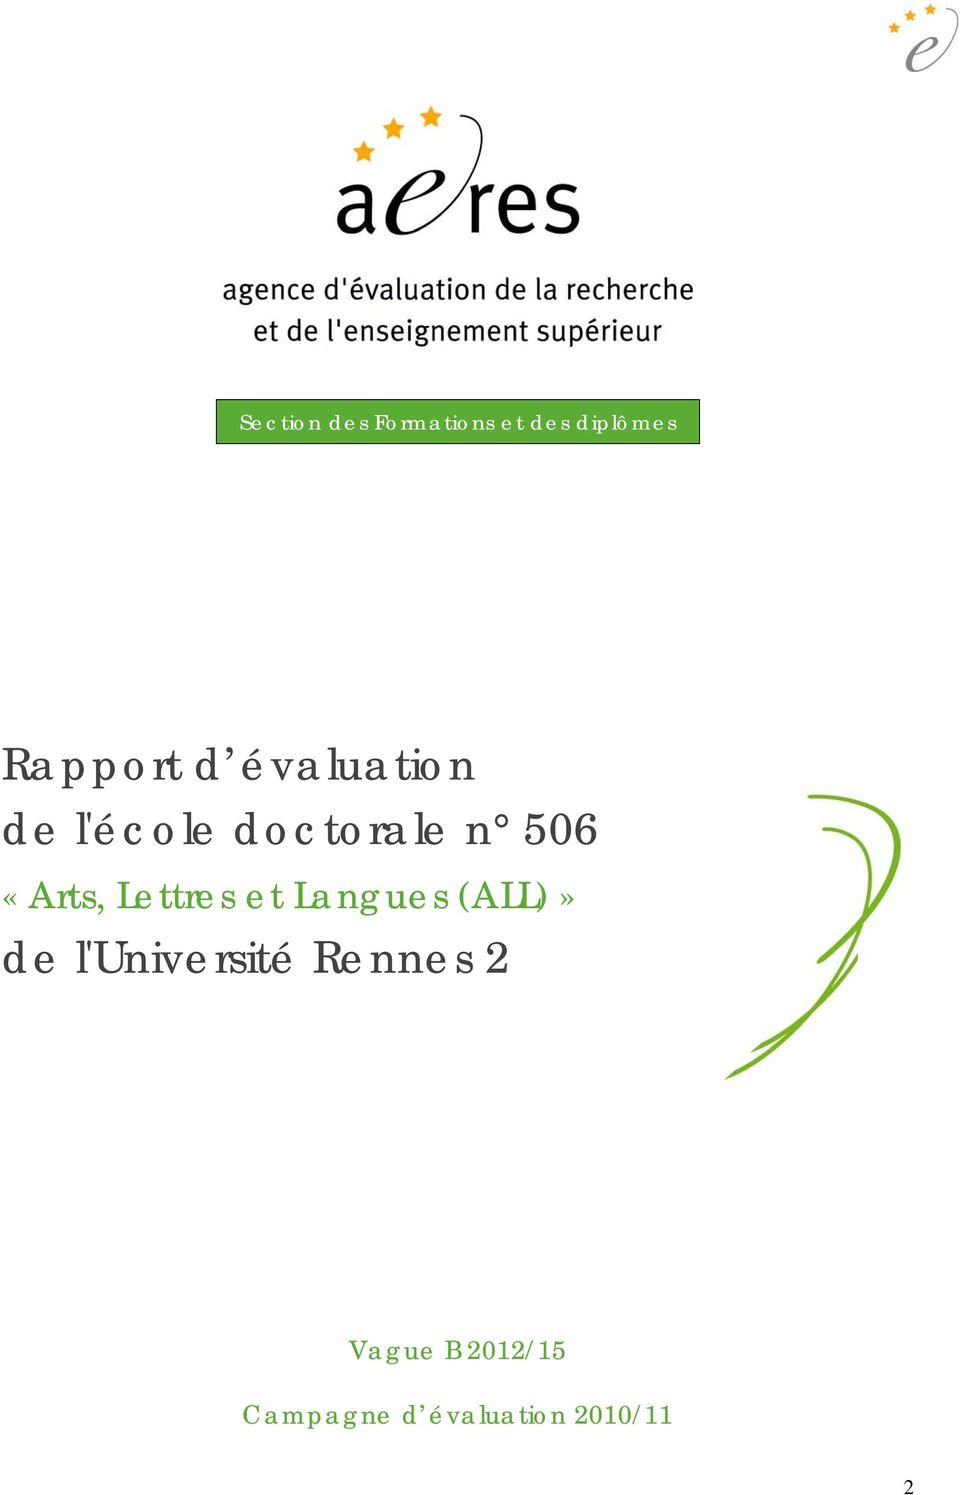 Lettres et Langues (ALL)» de l'université